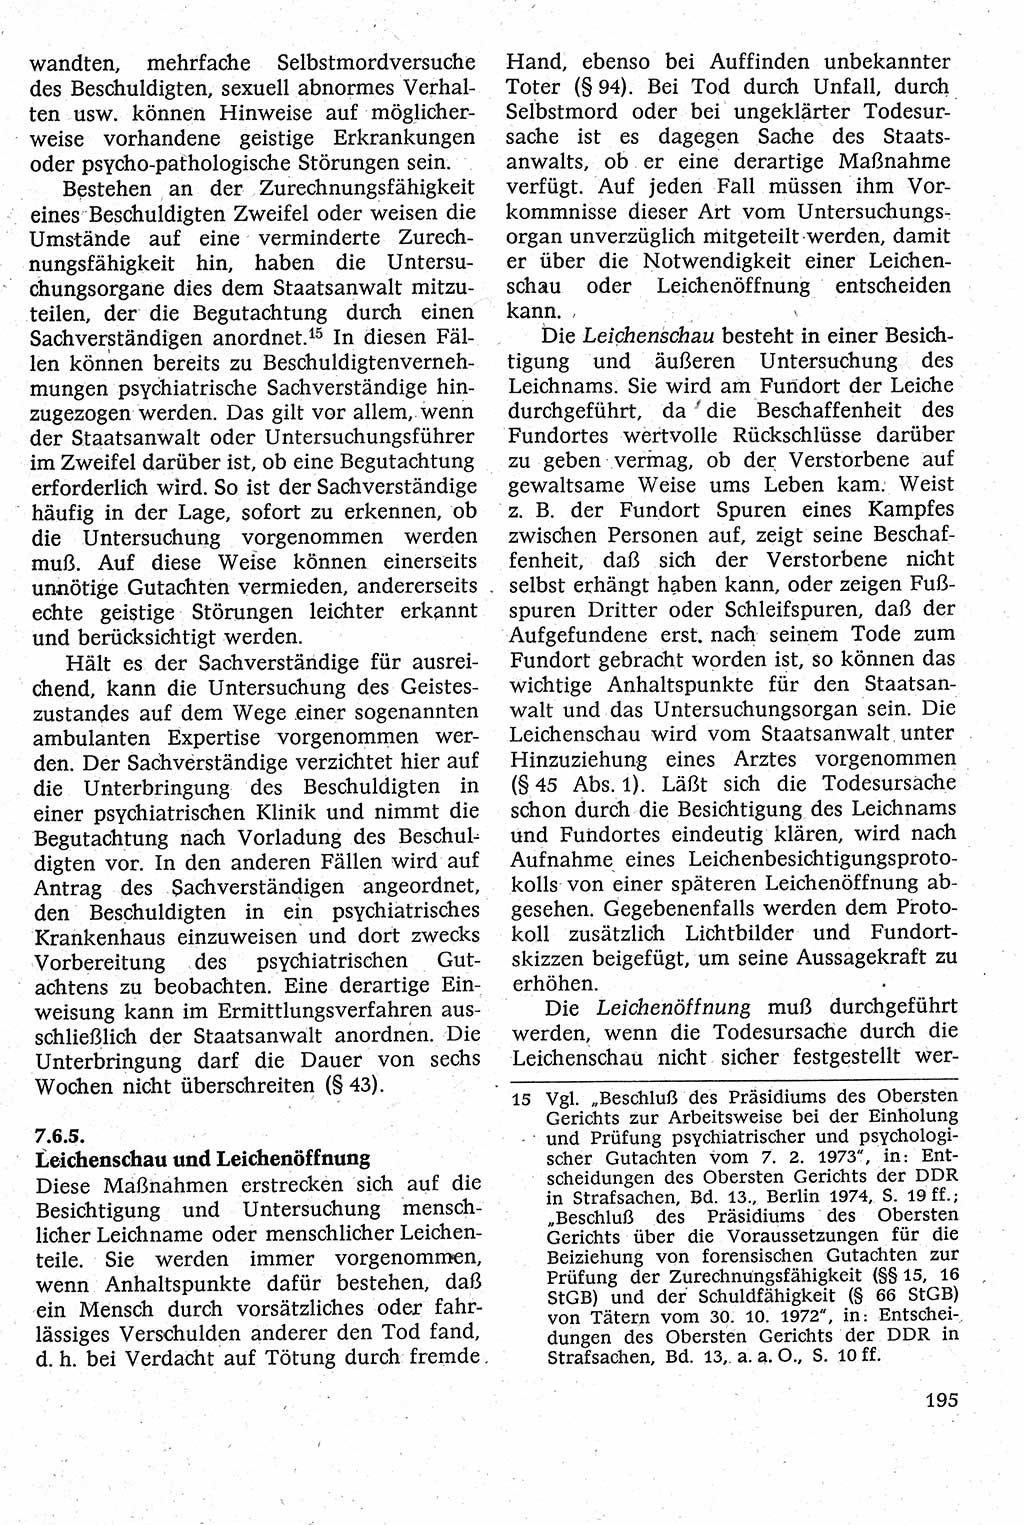 Strafverfahrensrecht [Deutsche Demokratische Republik (DDR)], Lehrbuch 1982, Seite 195 (Strafverf.-R. DDR Lb. 1982, S. 195)